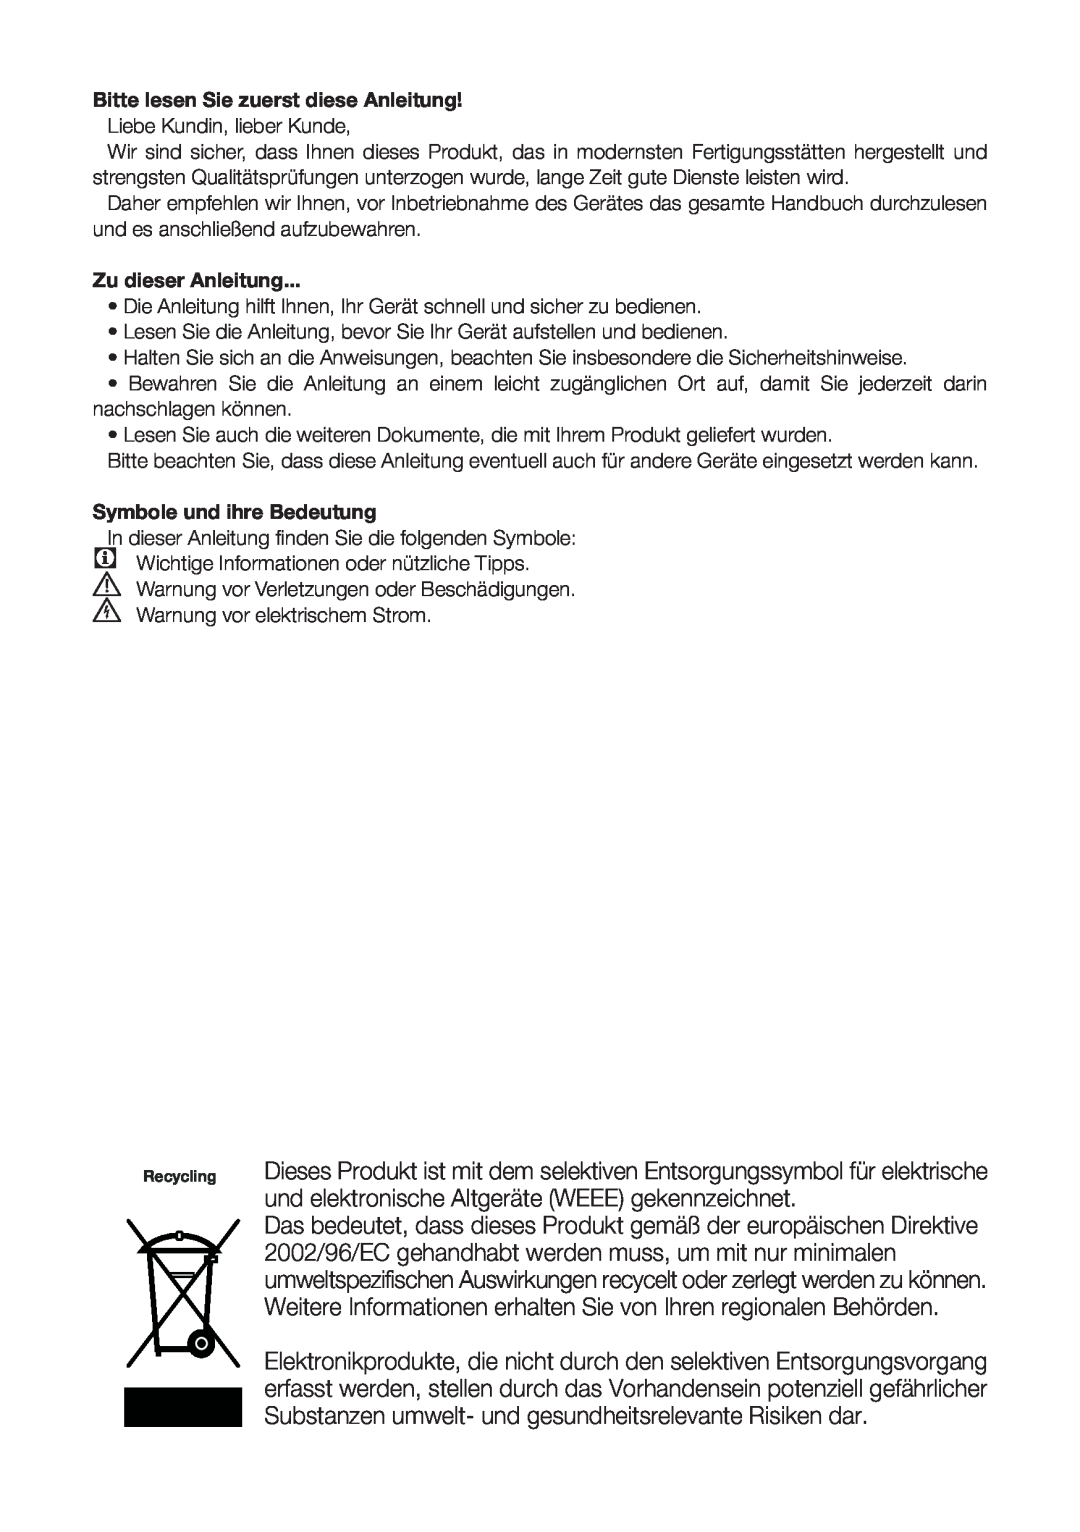 Blomberg DND 9977 PD manual Bitte lesen Sie zuerst diese Anleitung, Zu dieser Anleitung, Symbole und ihre Bedeutung 